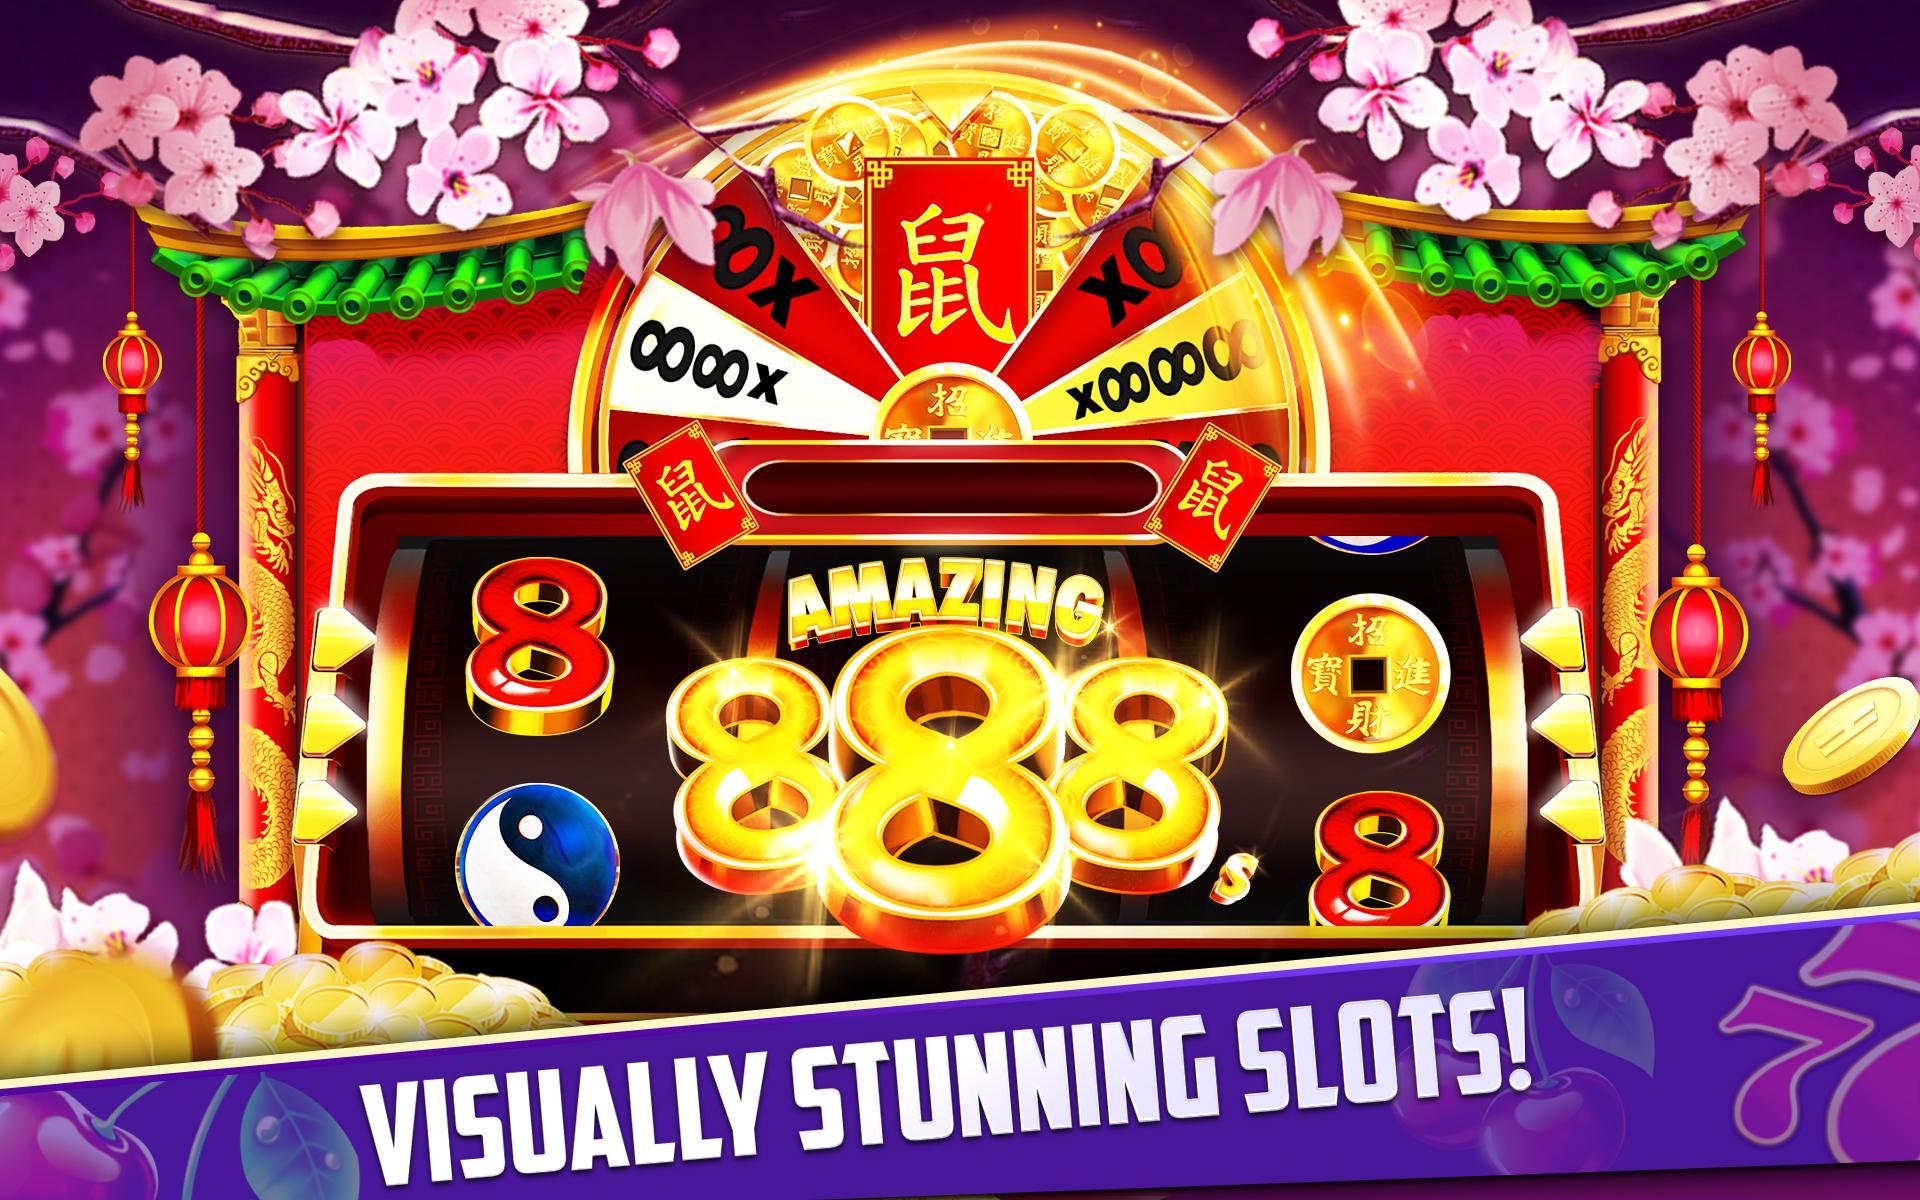 Stars Slots Casino - Vegas Slot Machines 1.0.1366 Screenshot 19